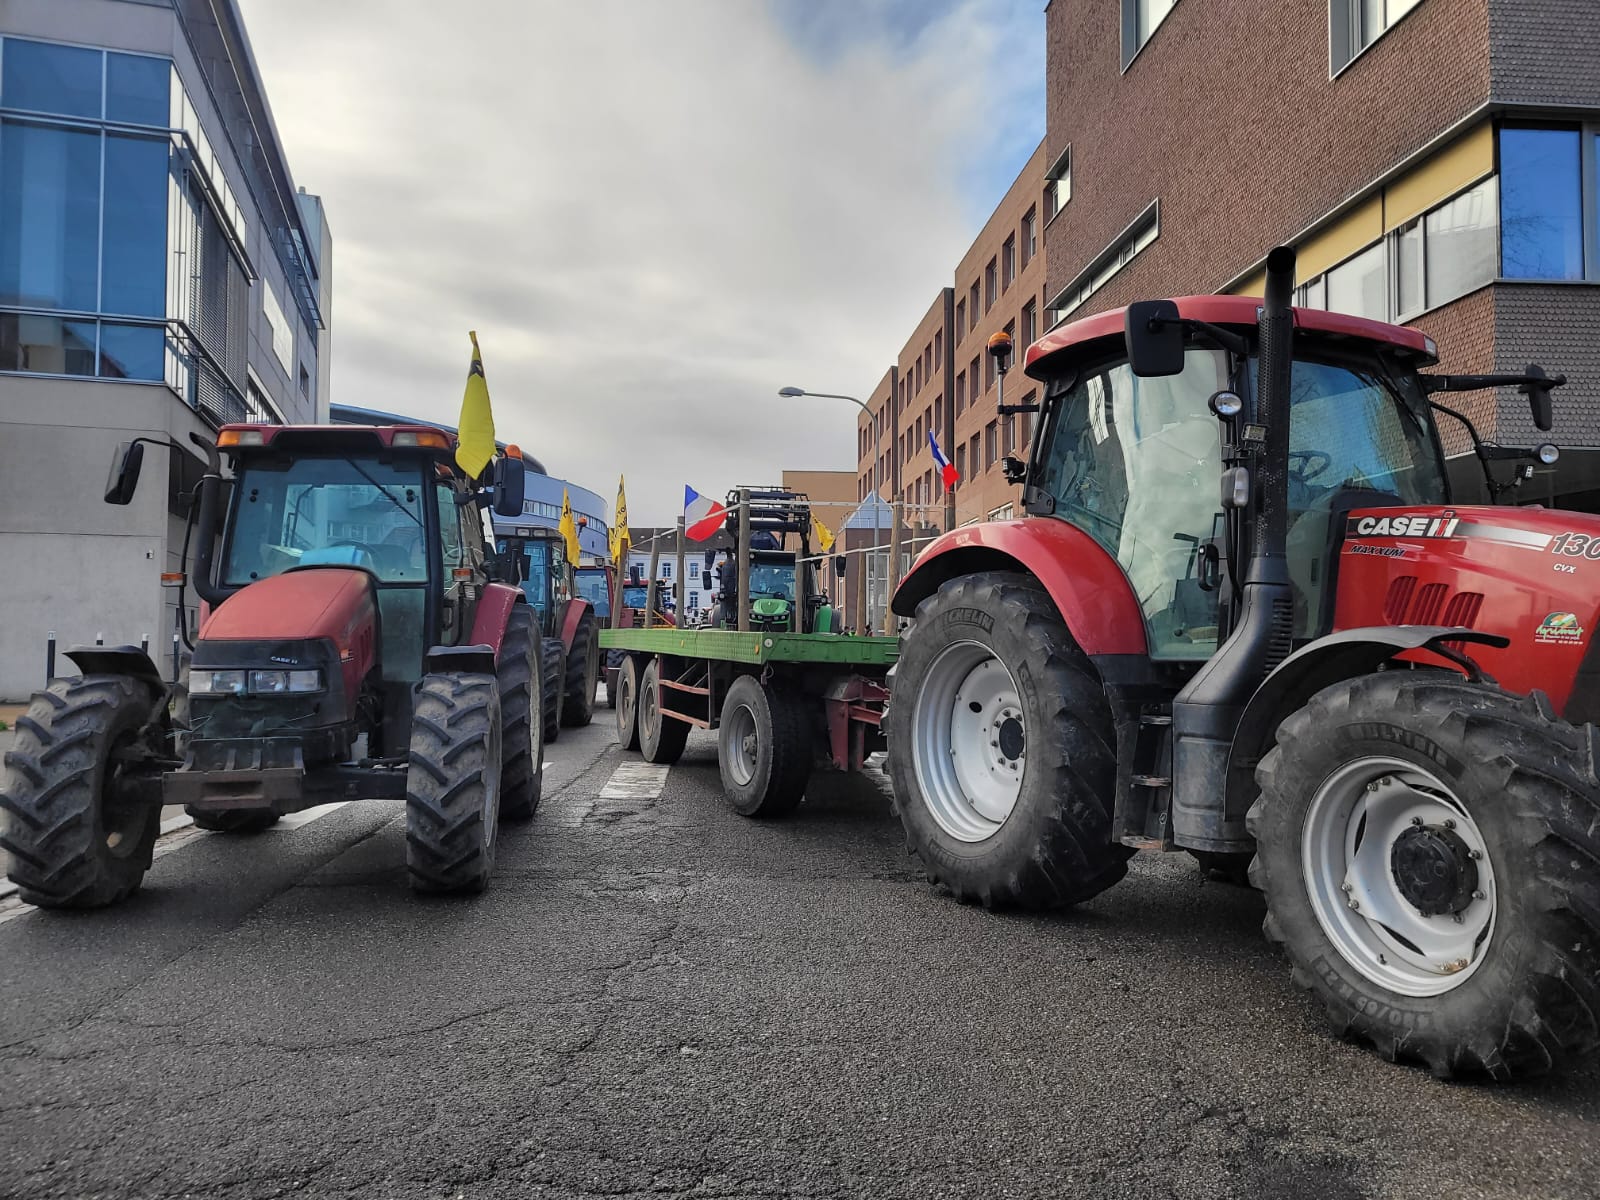 Deux manifestations d’agriculteurs devant le Parlement européen mardi 6 février